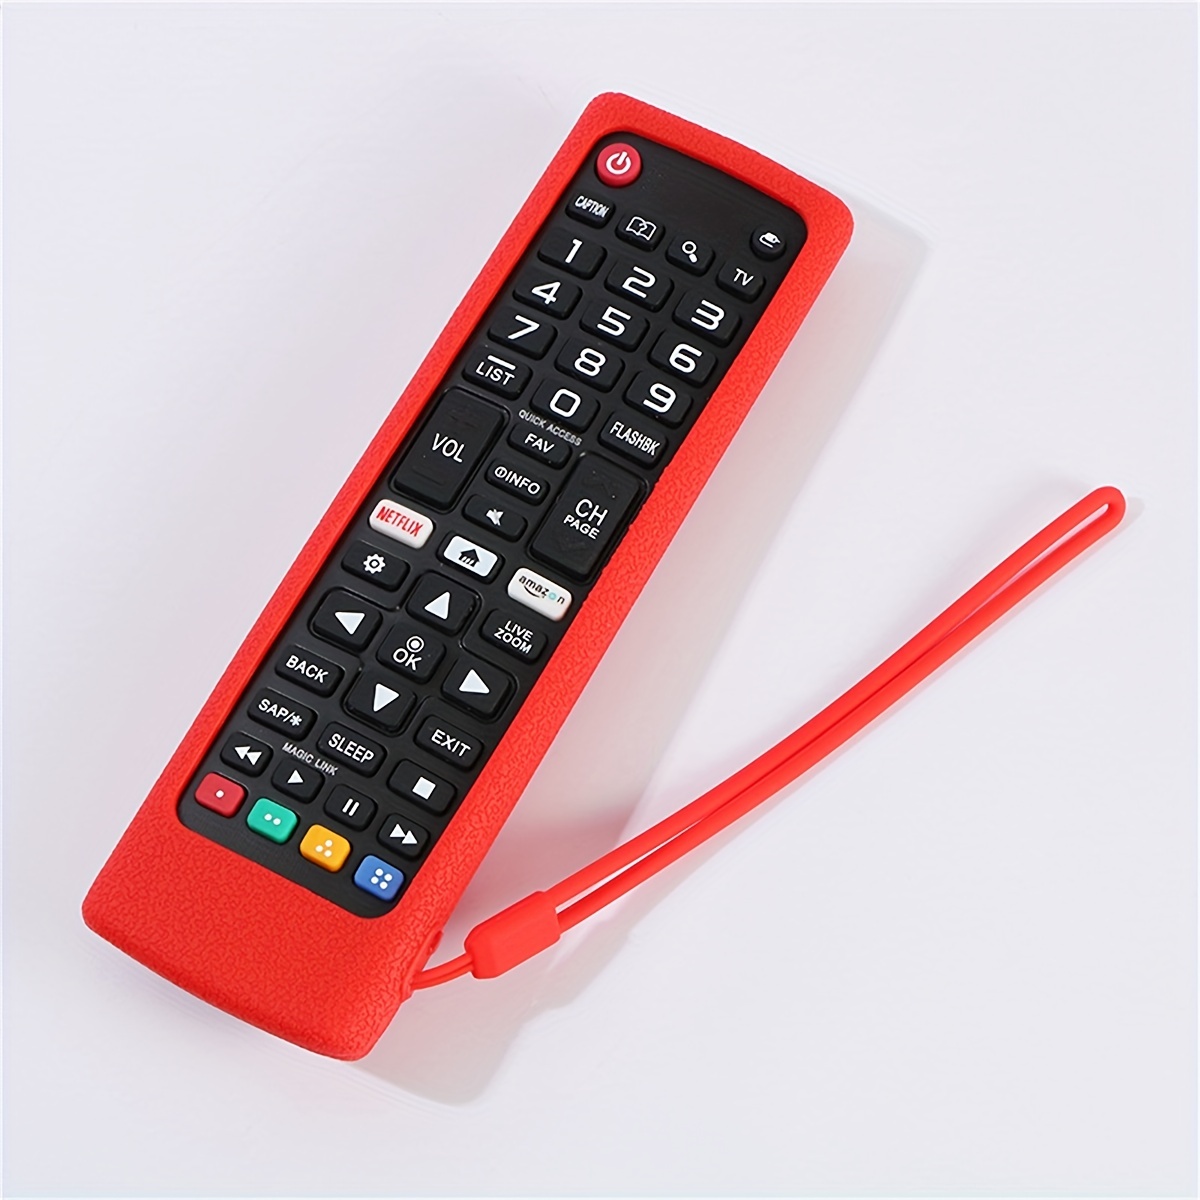 AKB75095307 AKB75375604 AKB74915305 - Funda de silicona de repuesto para  mando a distancia LG TV, color verde, azul y morado